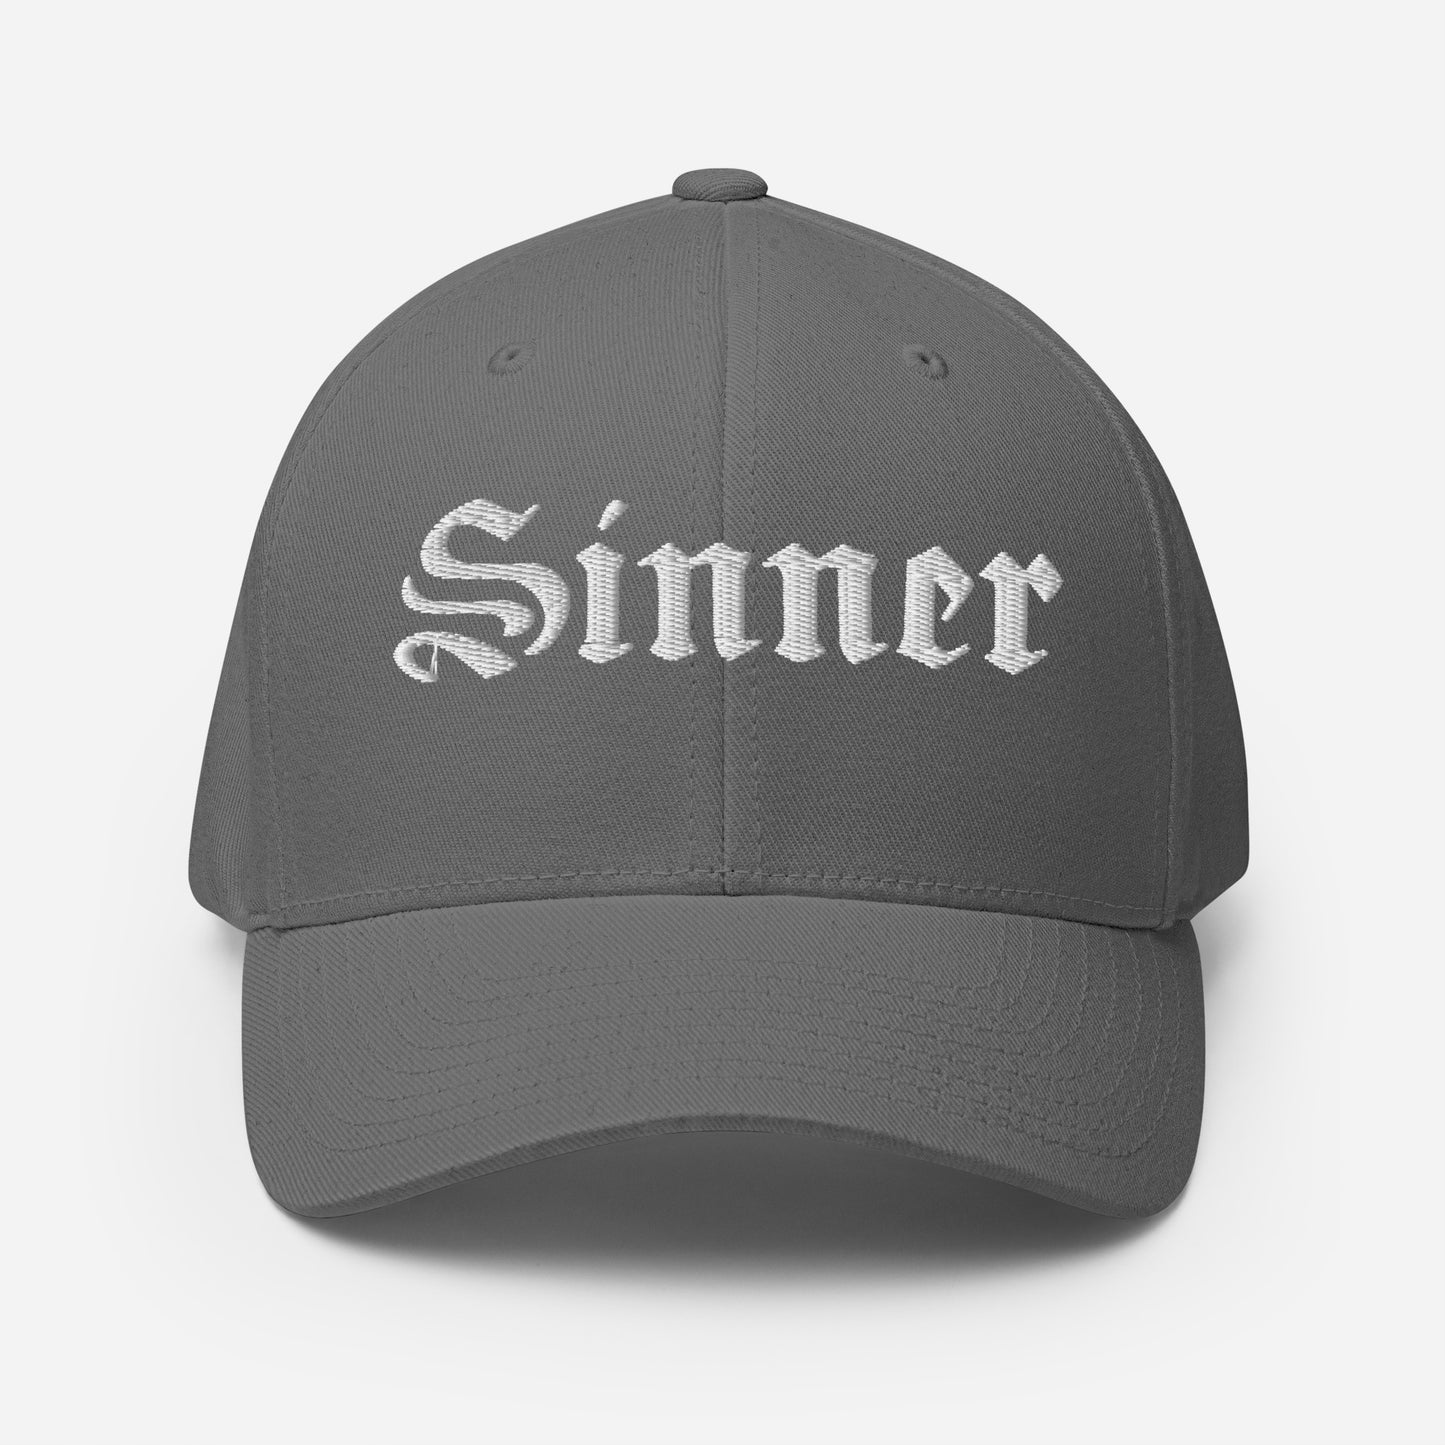 Pop Culture | Sinner | Structured Cap